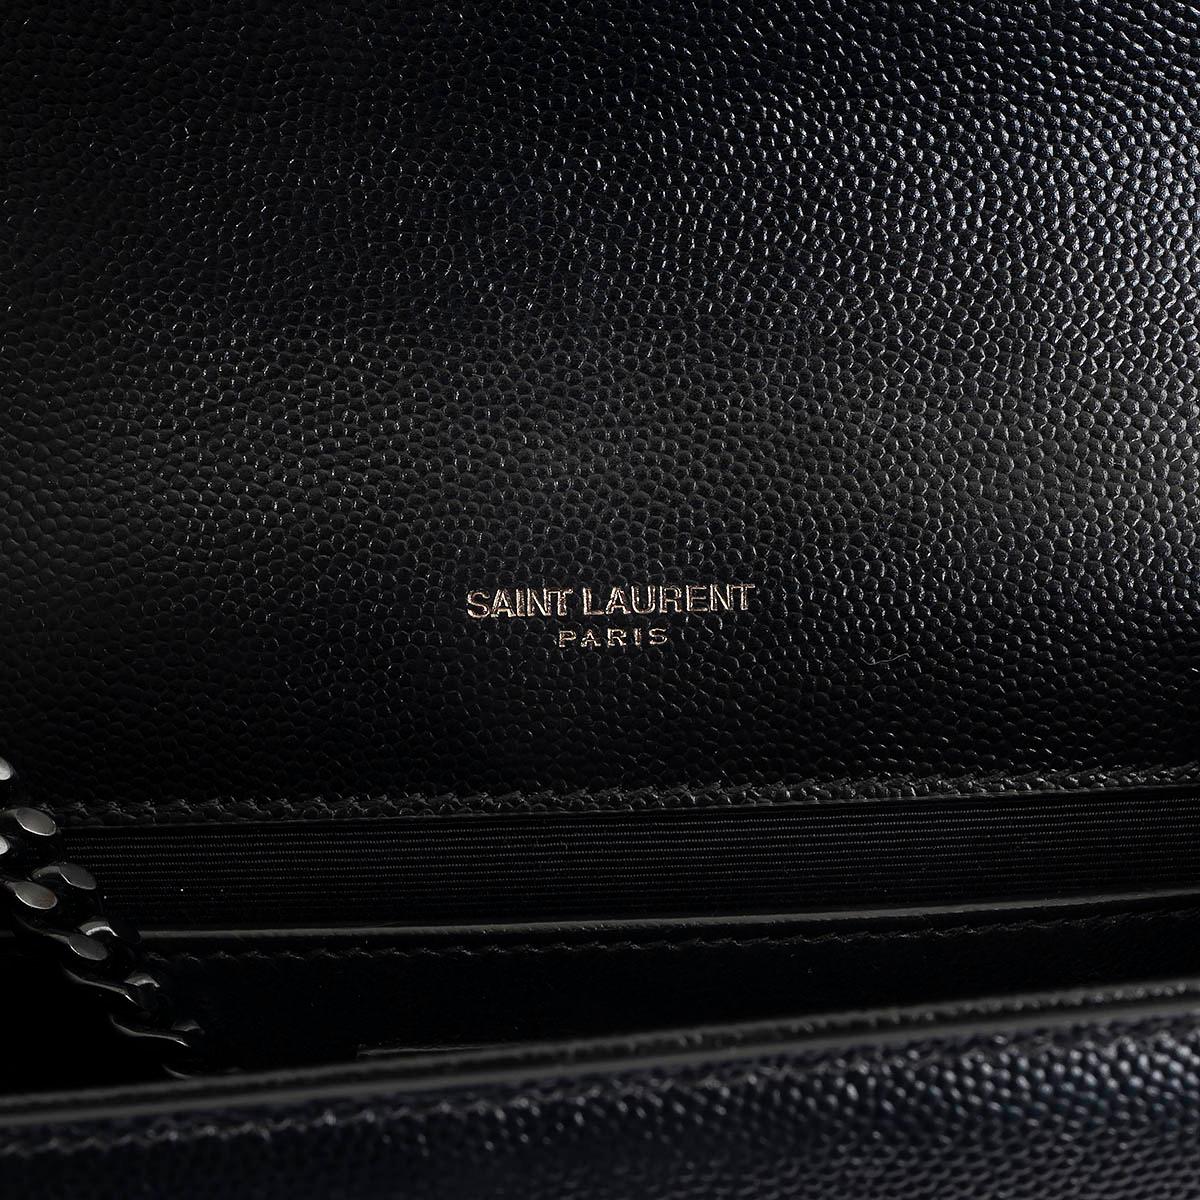 SAINT LAURENT black Grain de Poudre leather SMALL KATE Shoulder Bag 2